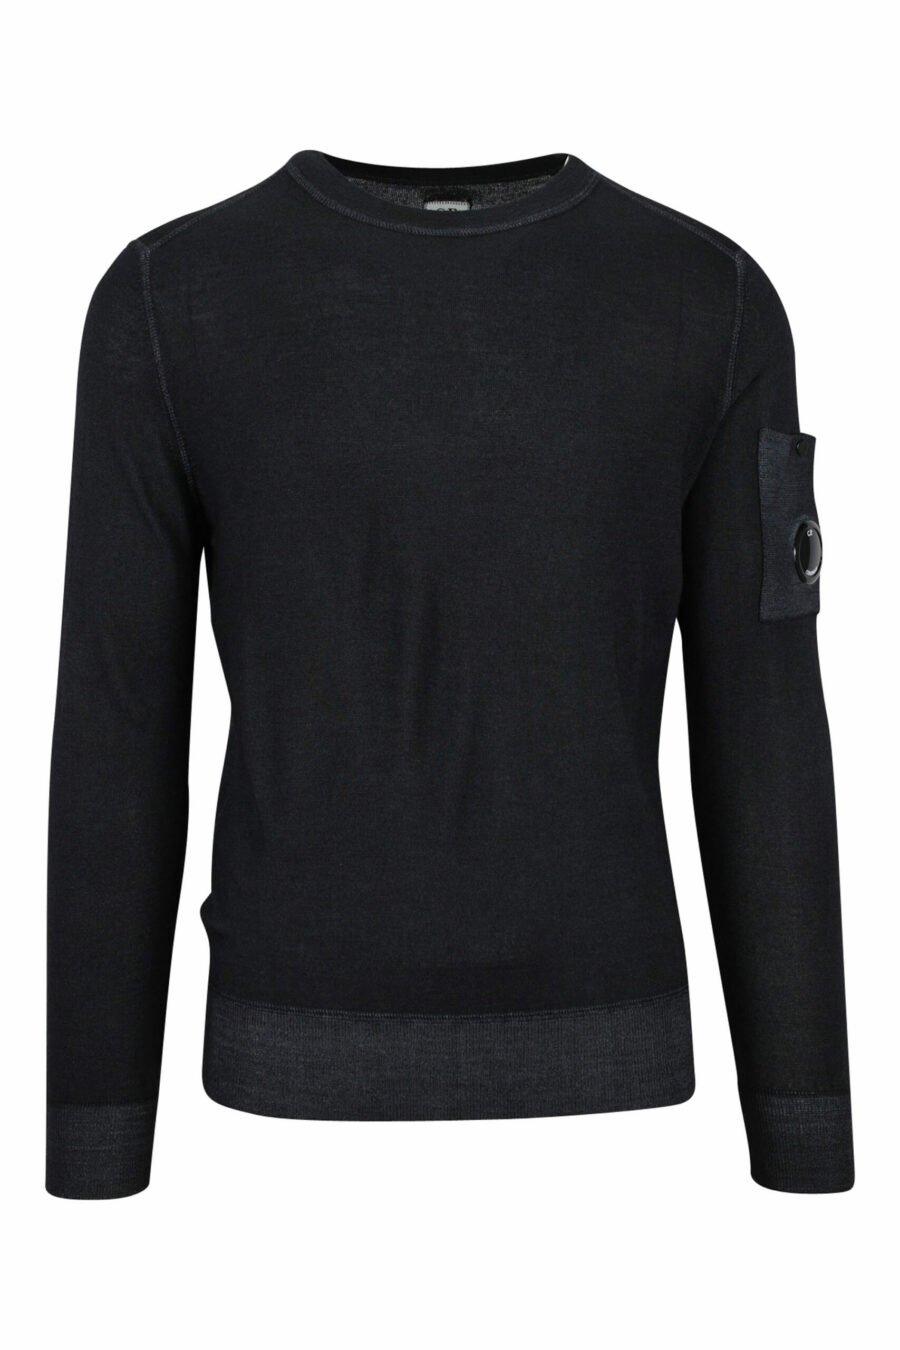 Sweatshirt noir avec logo latéral de la lentille - 7620943583458 scaled